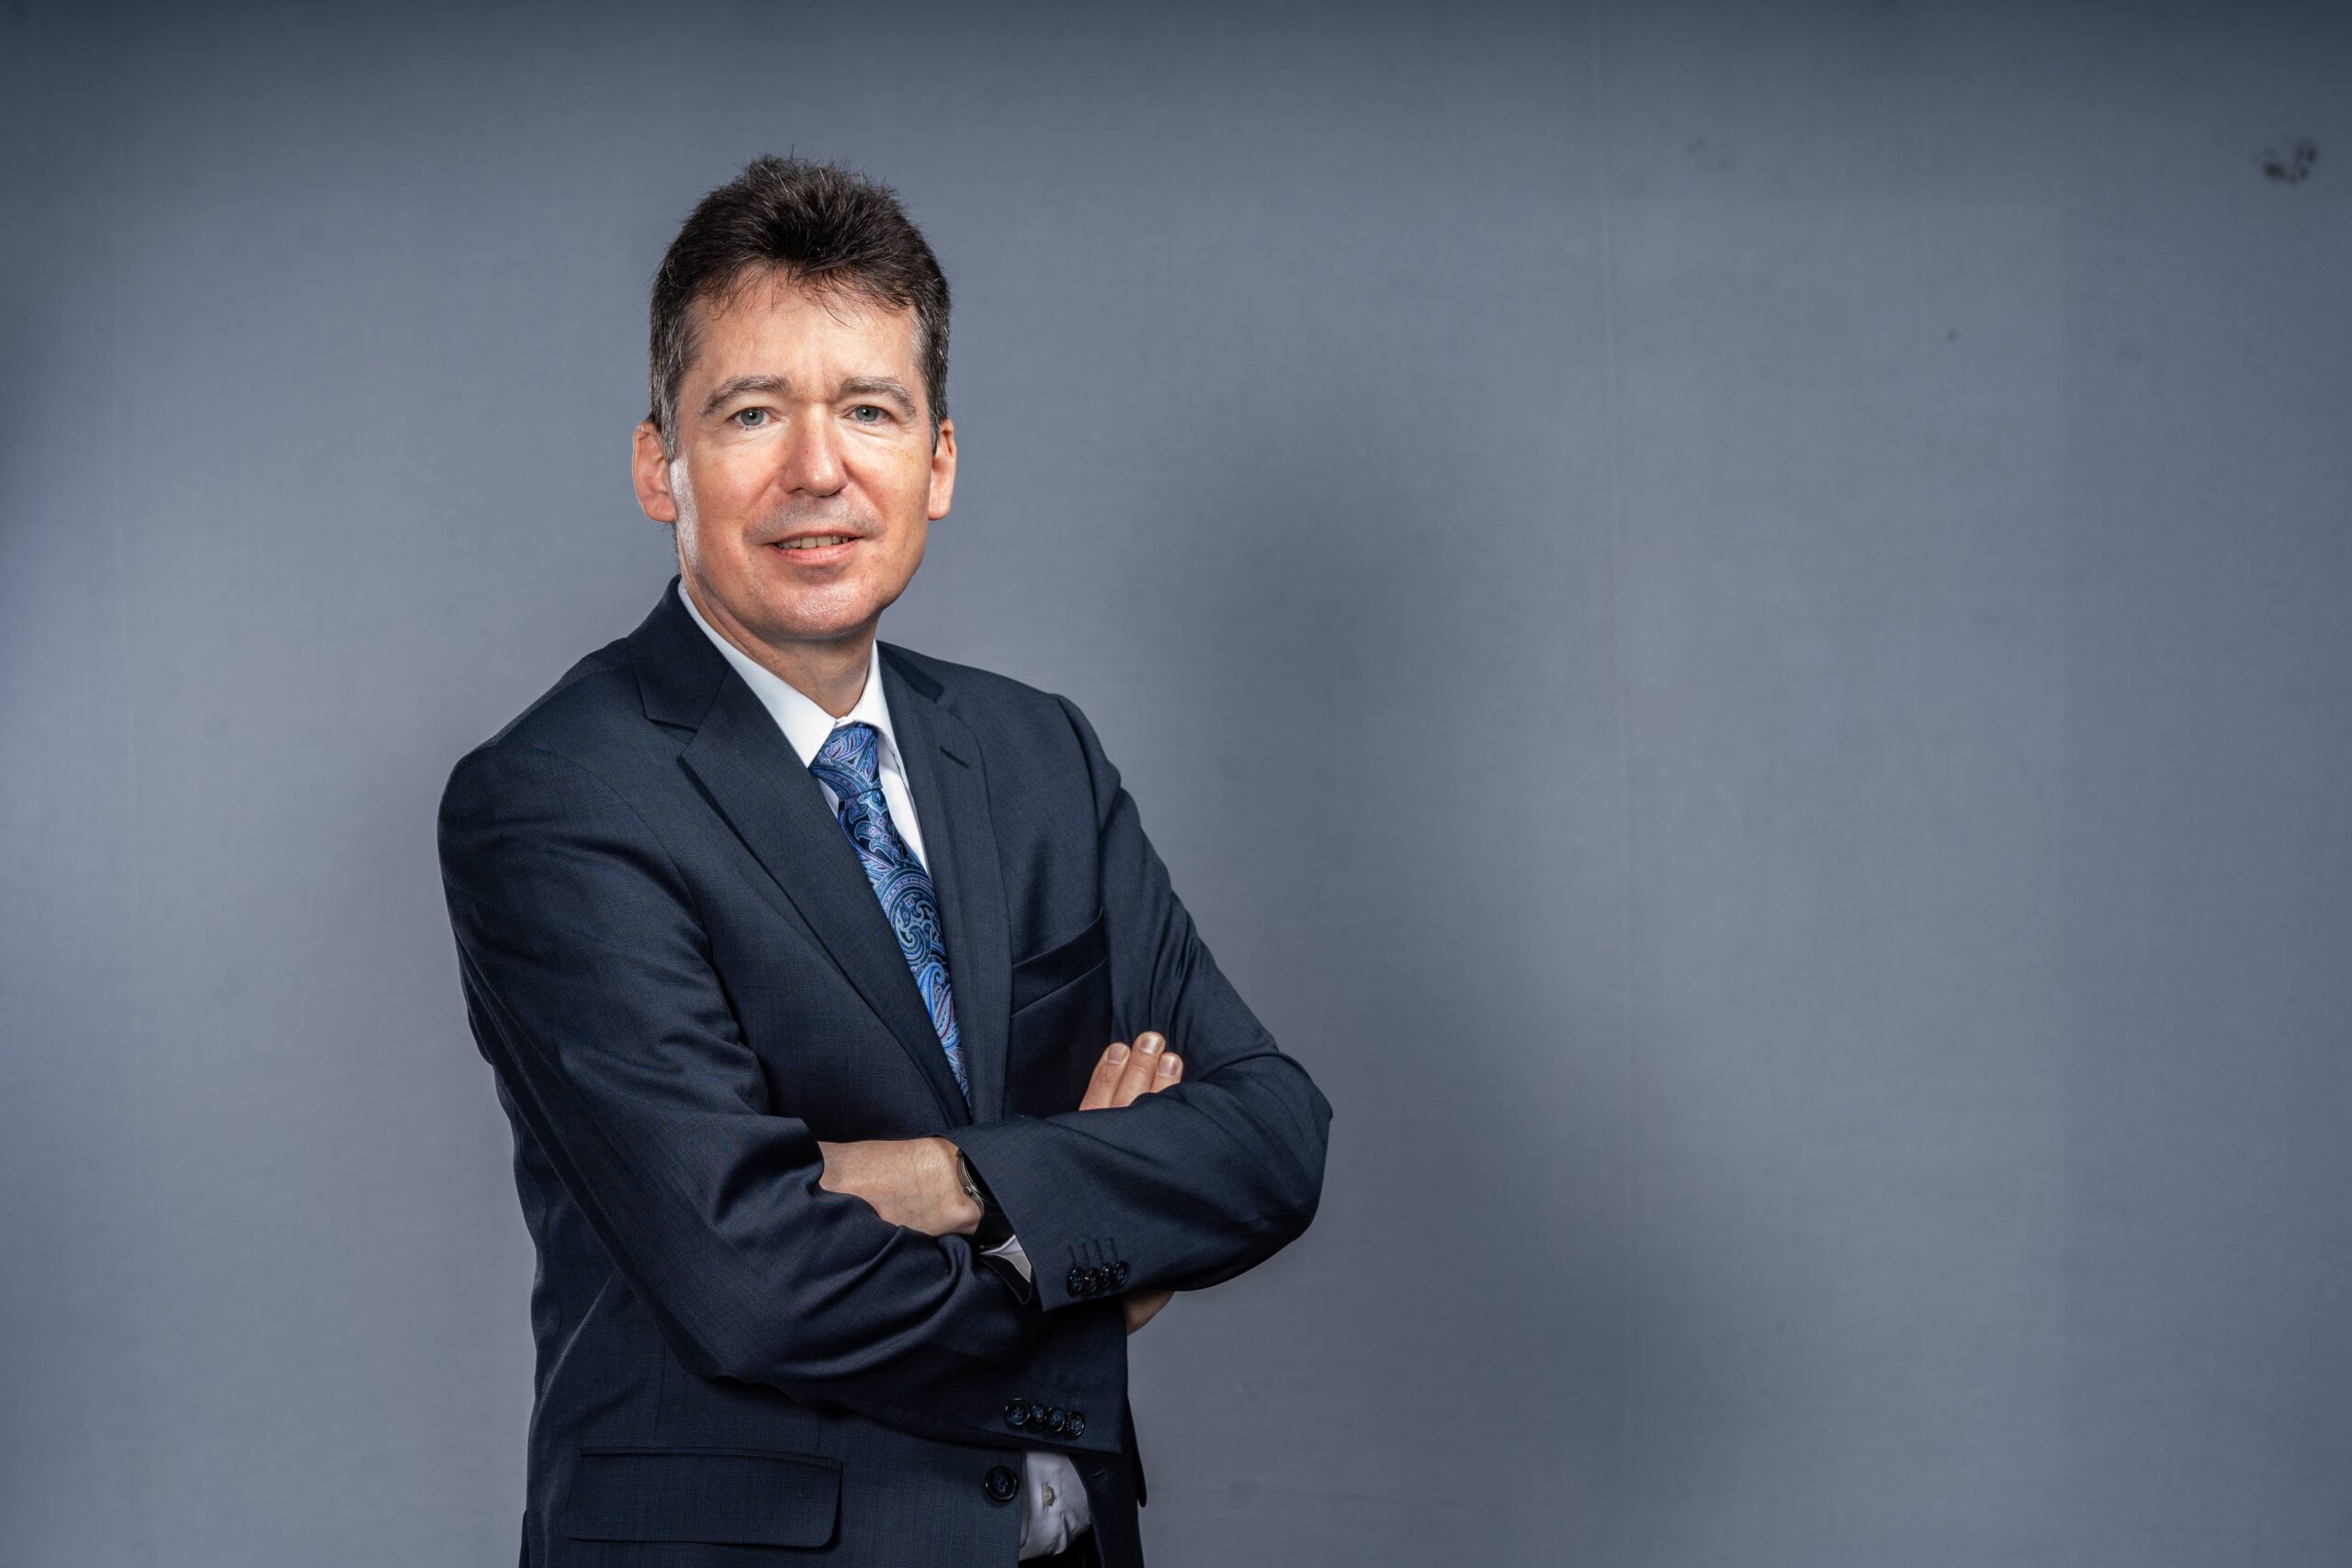 Christian Cahn von Seelen, Executive Director – Sales & Marketing, SAVWIPL